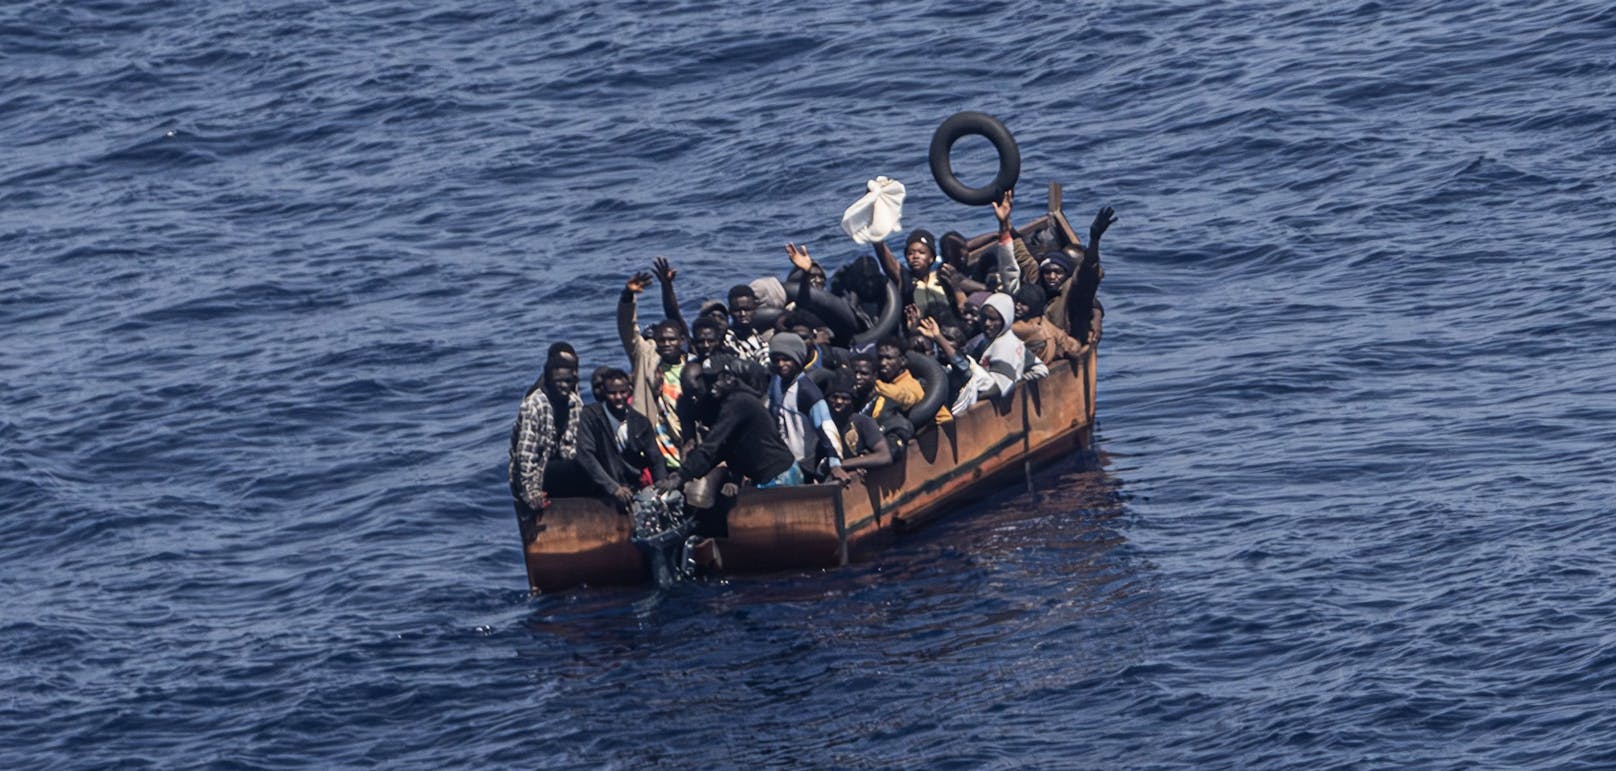 Erst kürzlich kamen bei einem Schiffsbruch vor Lampedusa mehr als 40 Personen ums Leben.